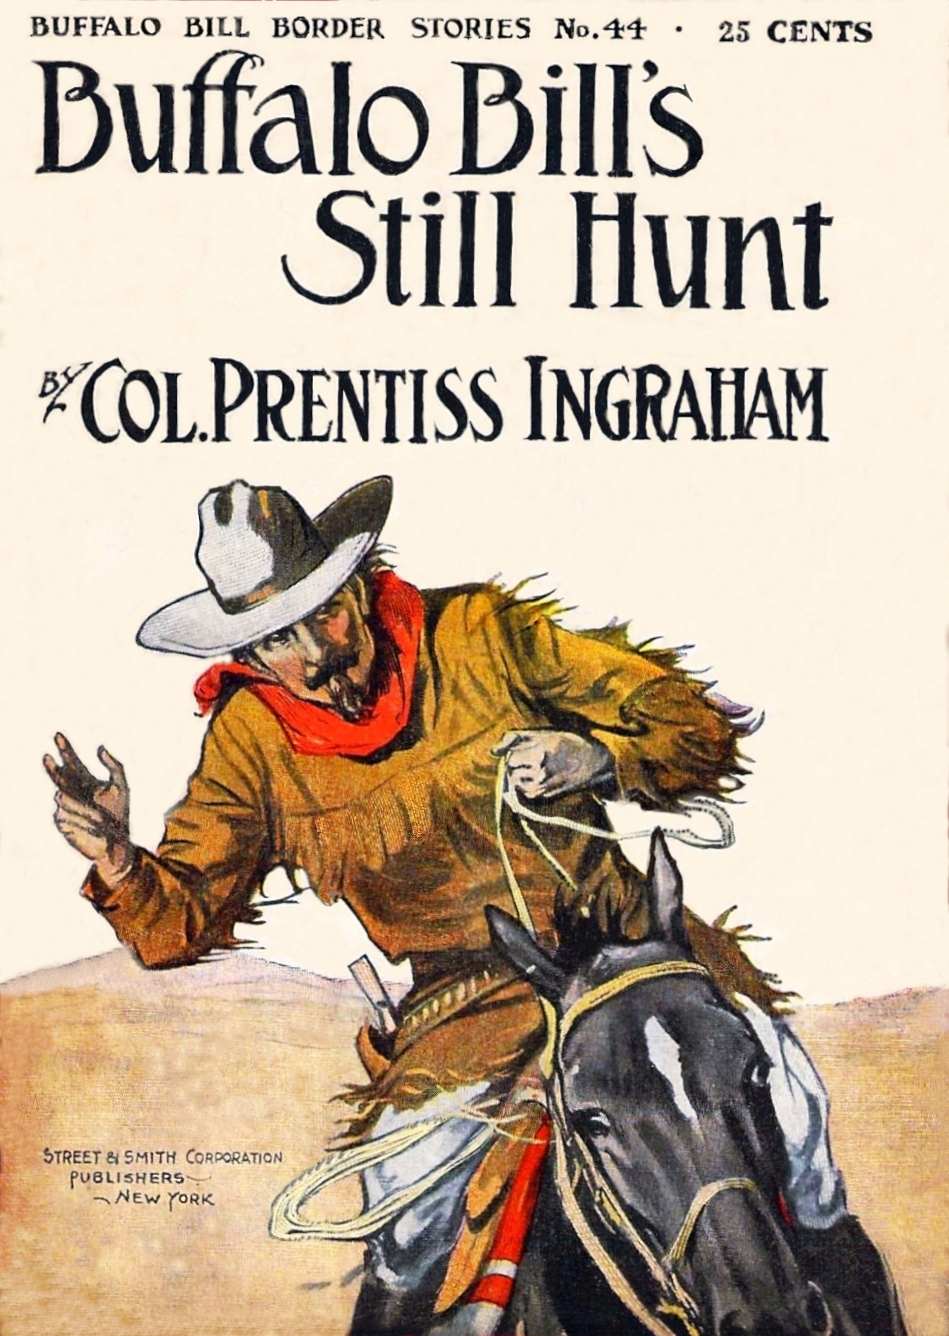 Buffalo Bills Still Hunt, by Colonel Prentiss Ingraham—A Project Gutenberg eBook